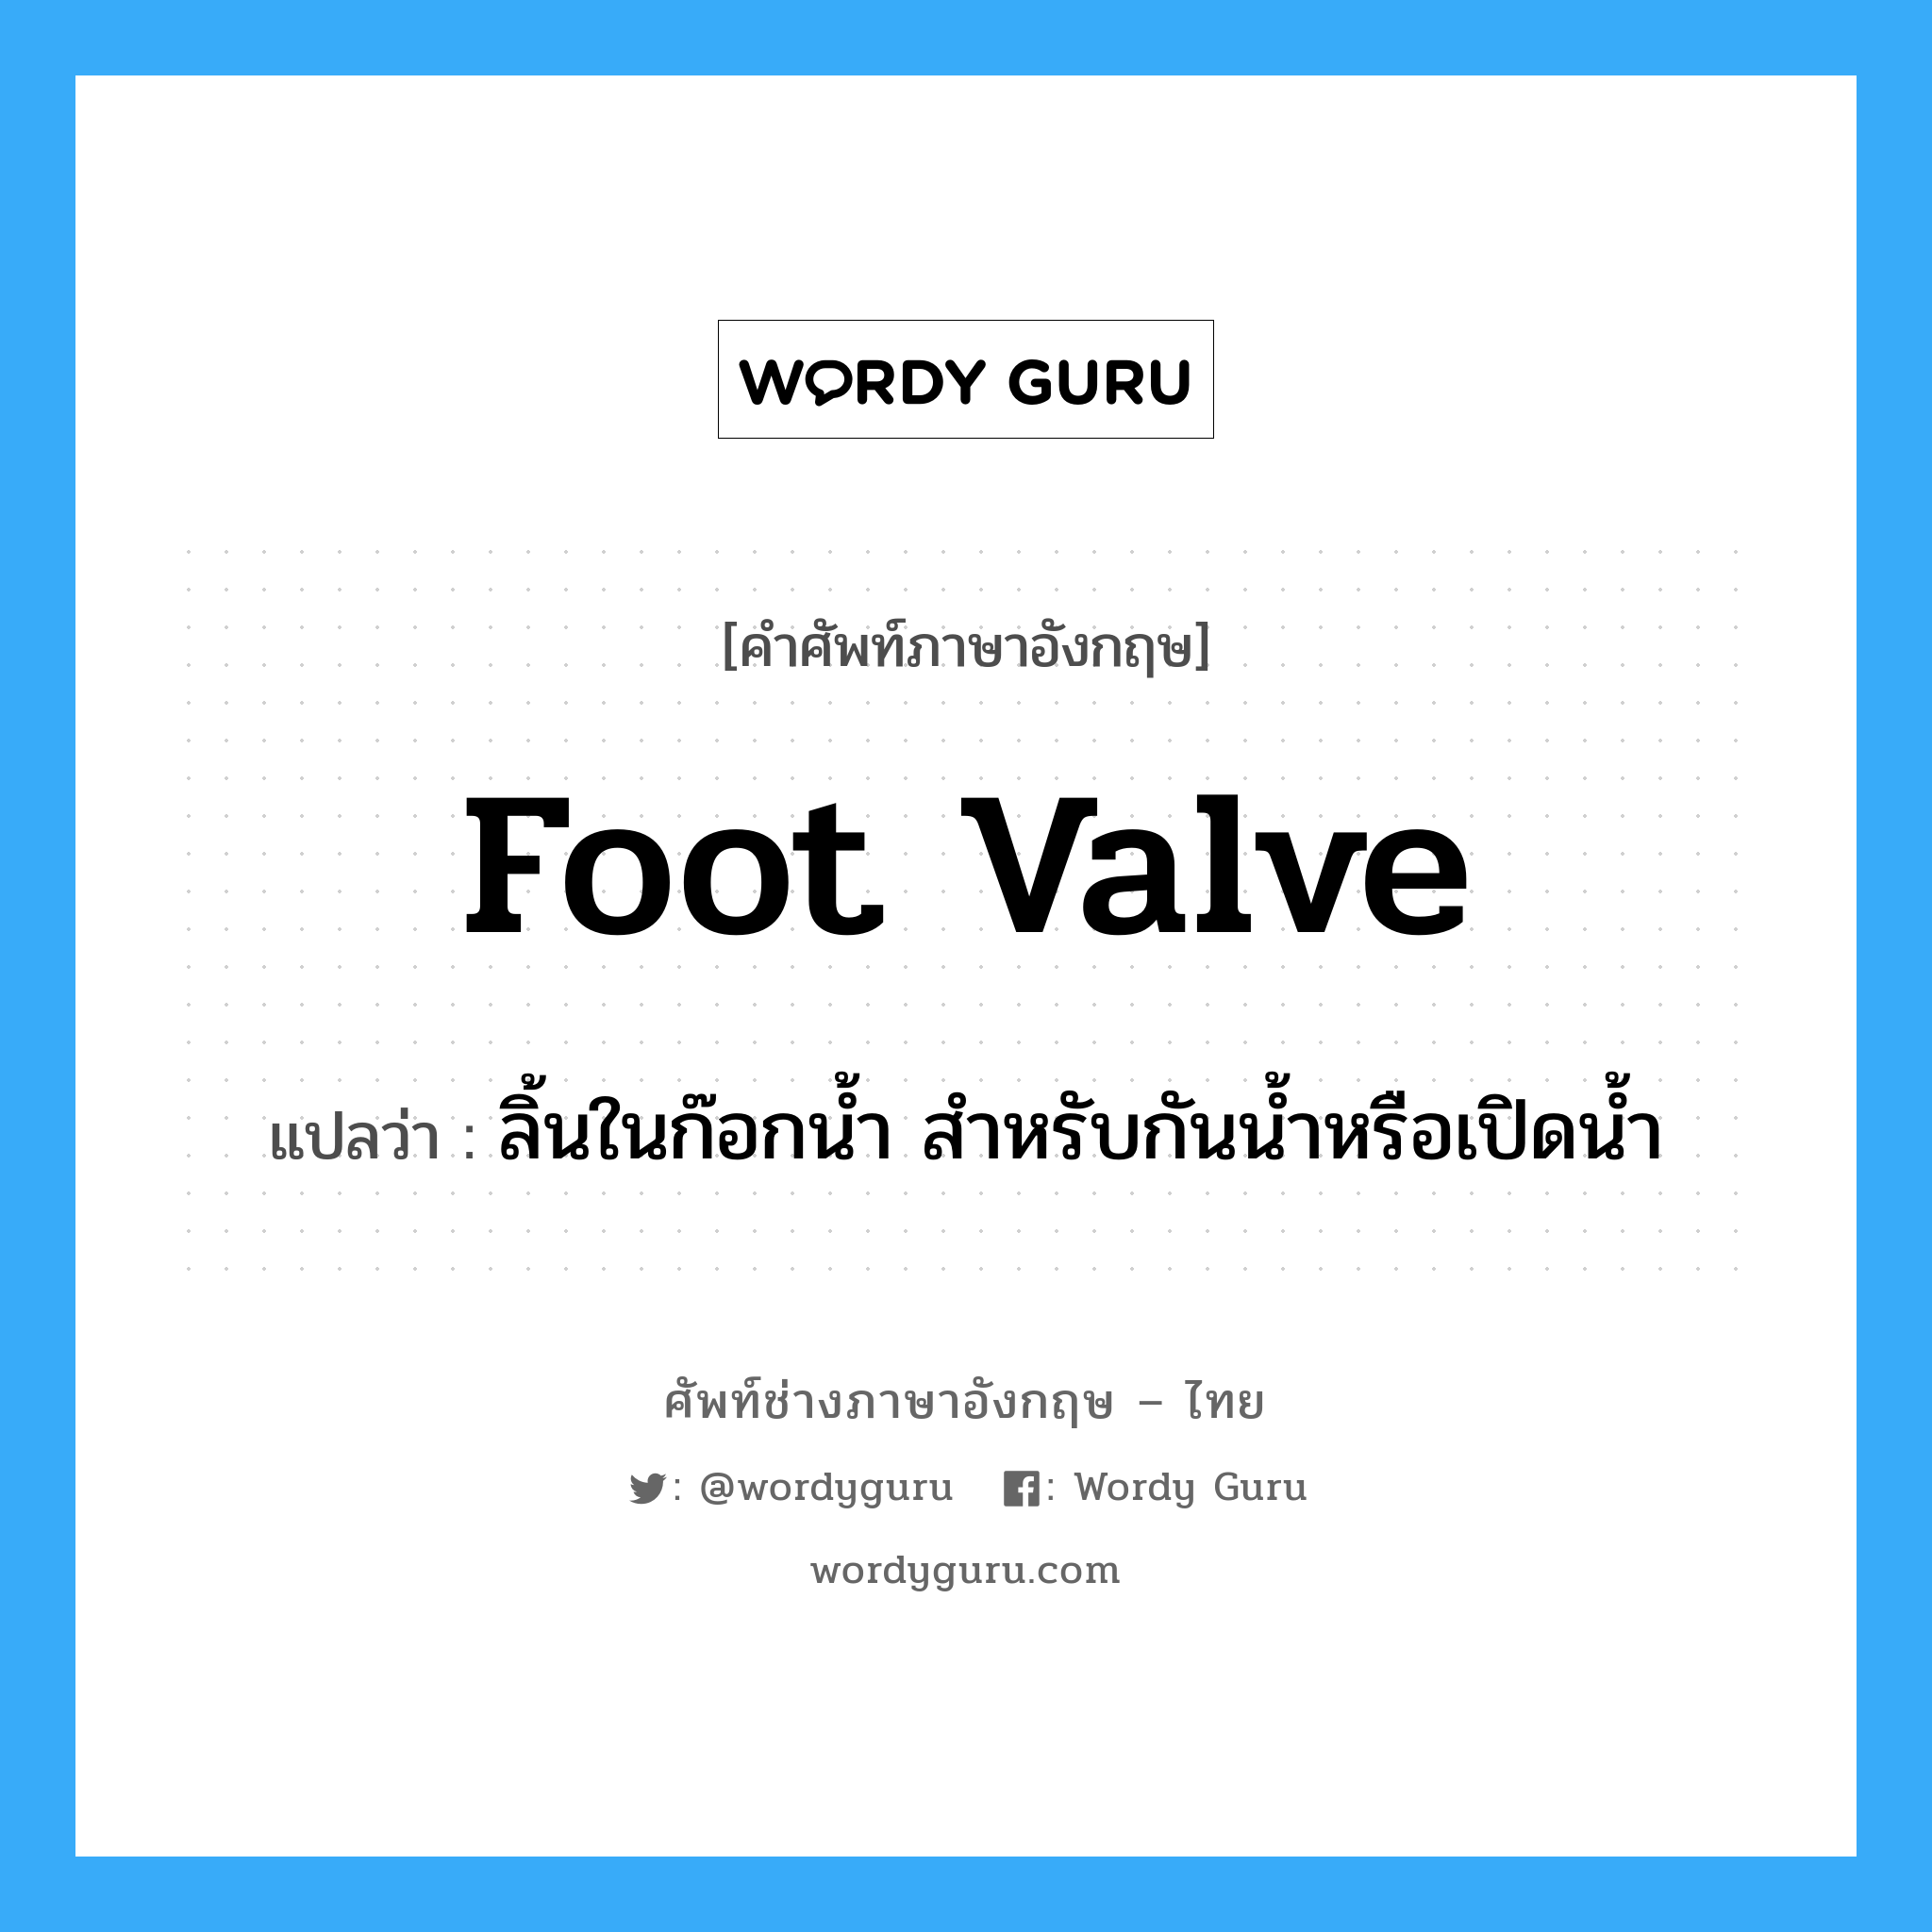 foot-valve แปลว่า?, คำศัพท์ช่างภาษาอังกฤษ - ไทย foot valve คำศัพท์ภาษาอังกฤษ foot valve แปลว่า ลิ้นในก๊อกน้ำ สำหรับกันน้ำหรือเปิดน้ำ